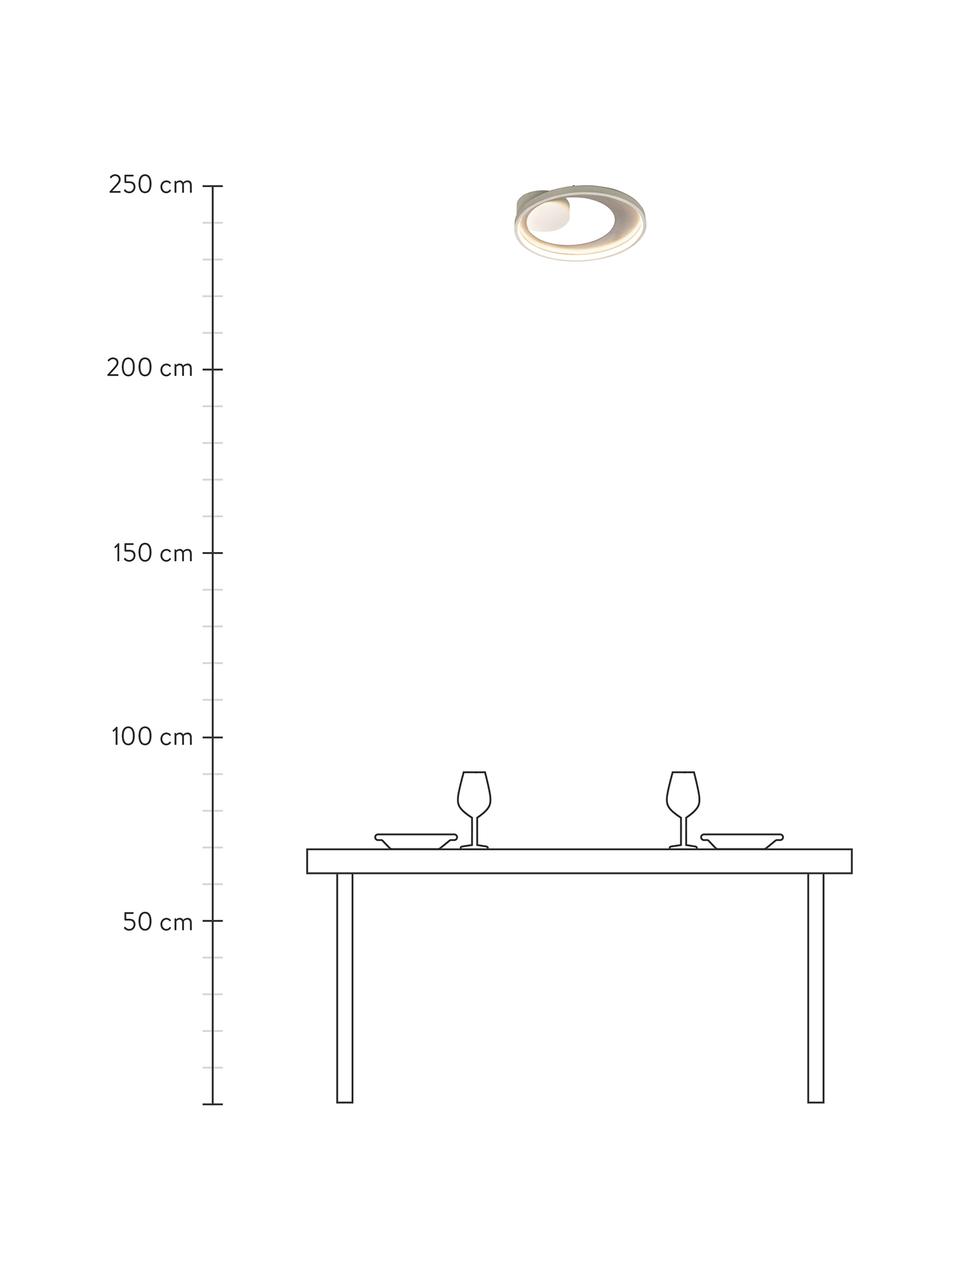 Dimbare LED plafondlamp Carat in wit/zilverkleur, Lampenkap: gecoat aluminium, Baldakijn: gecoat metaal, Wit, zilverkleurig, Ø 36 x H 7 cm